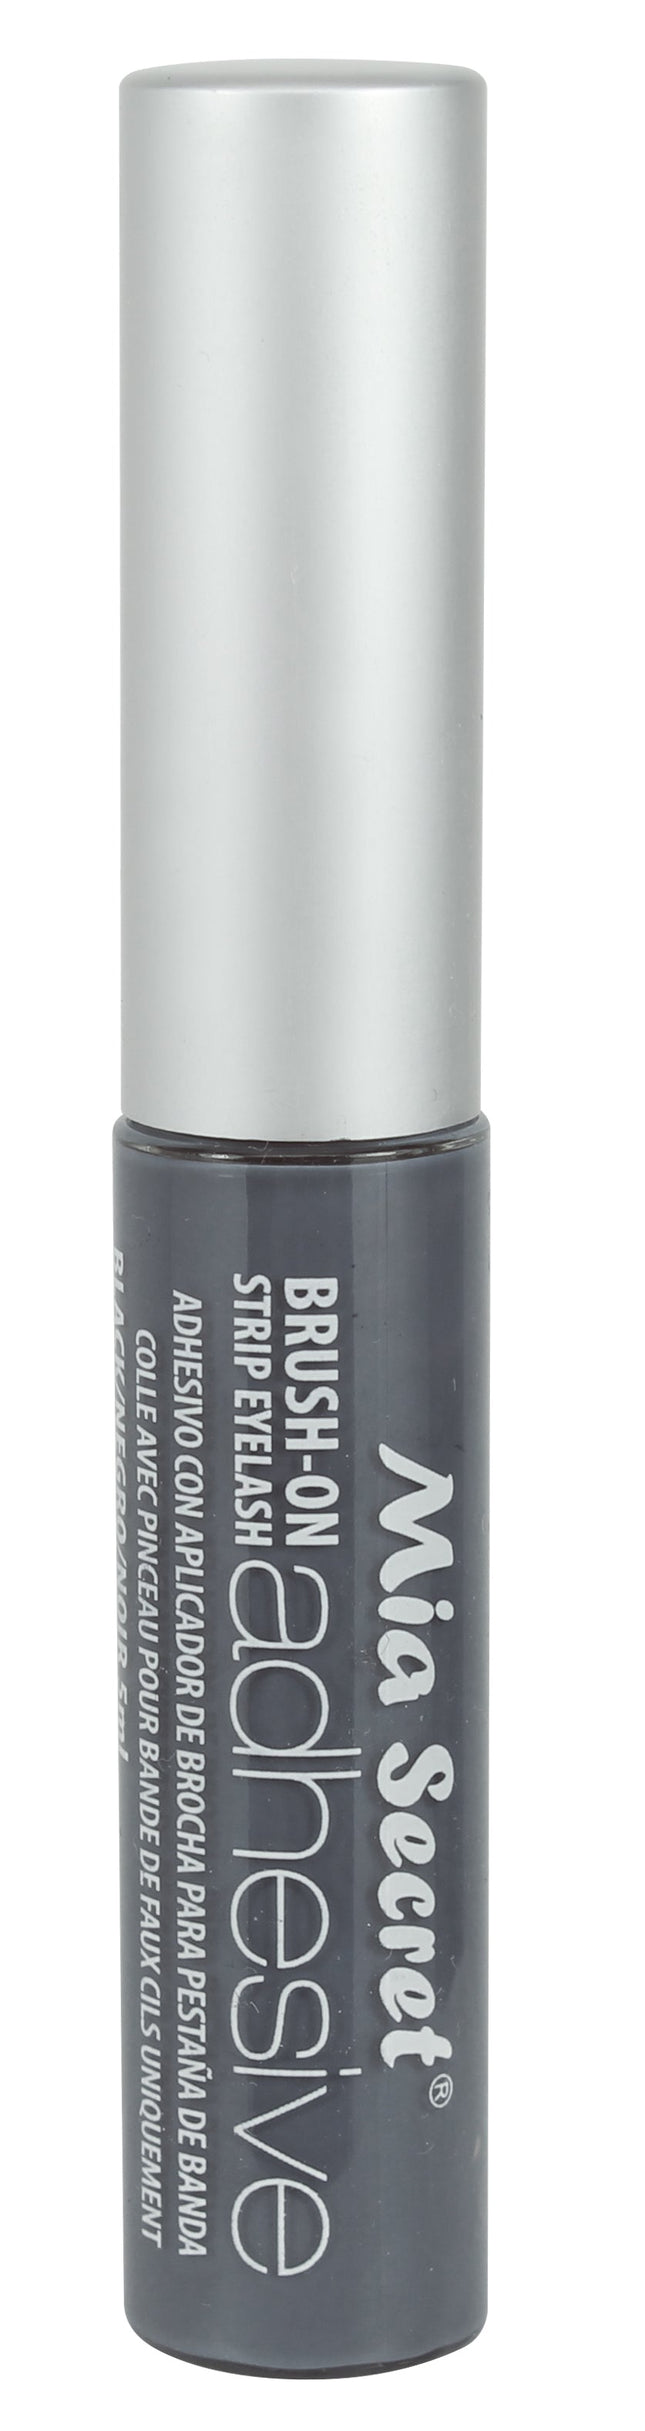 Brush On Eyelash Glue